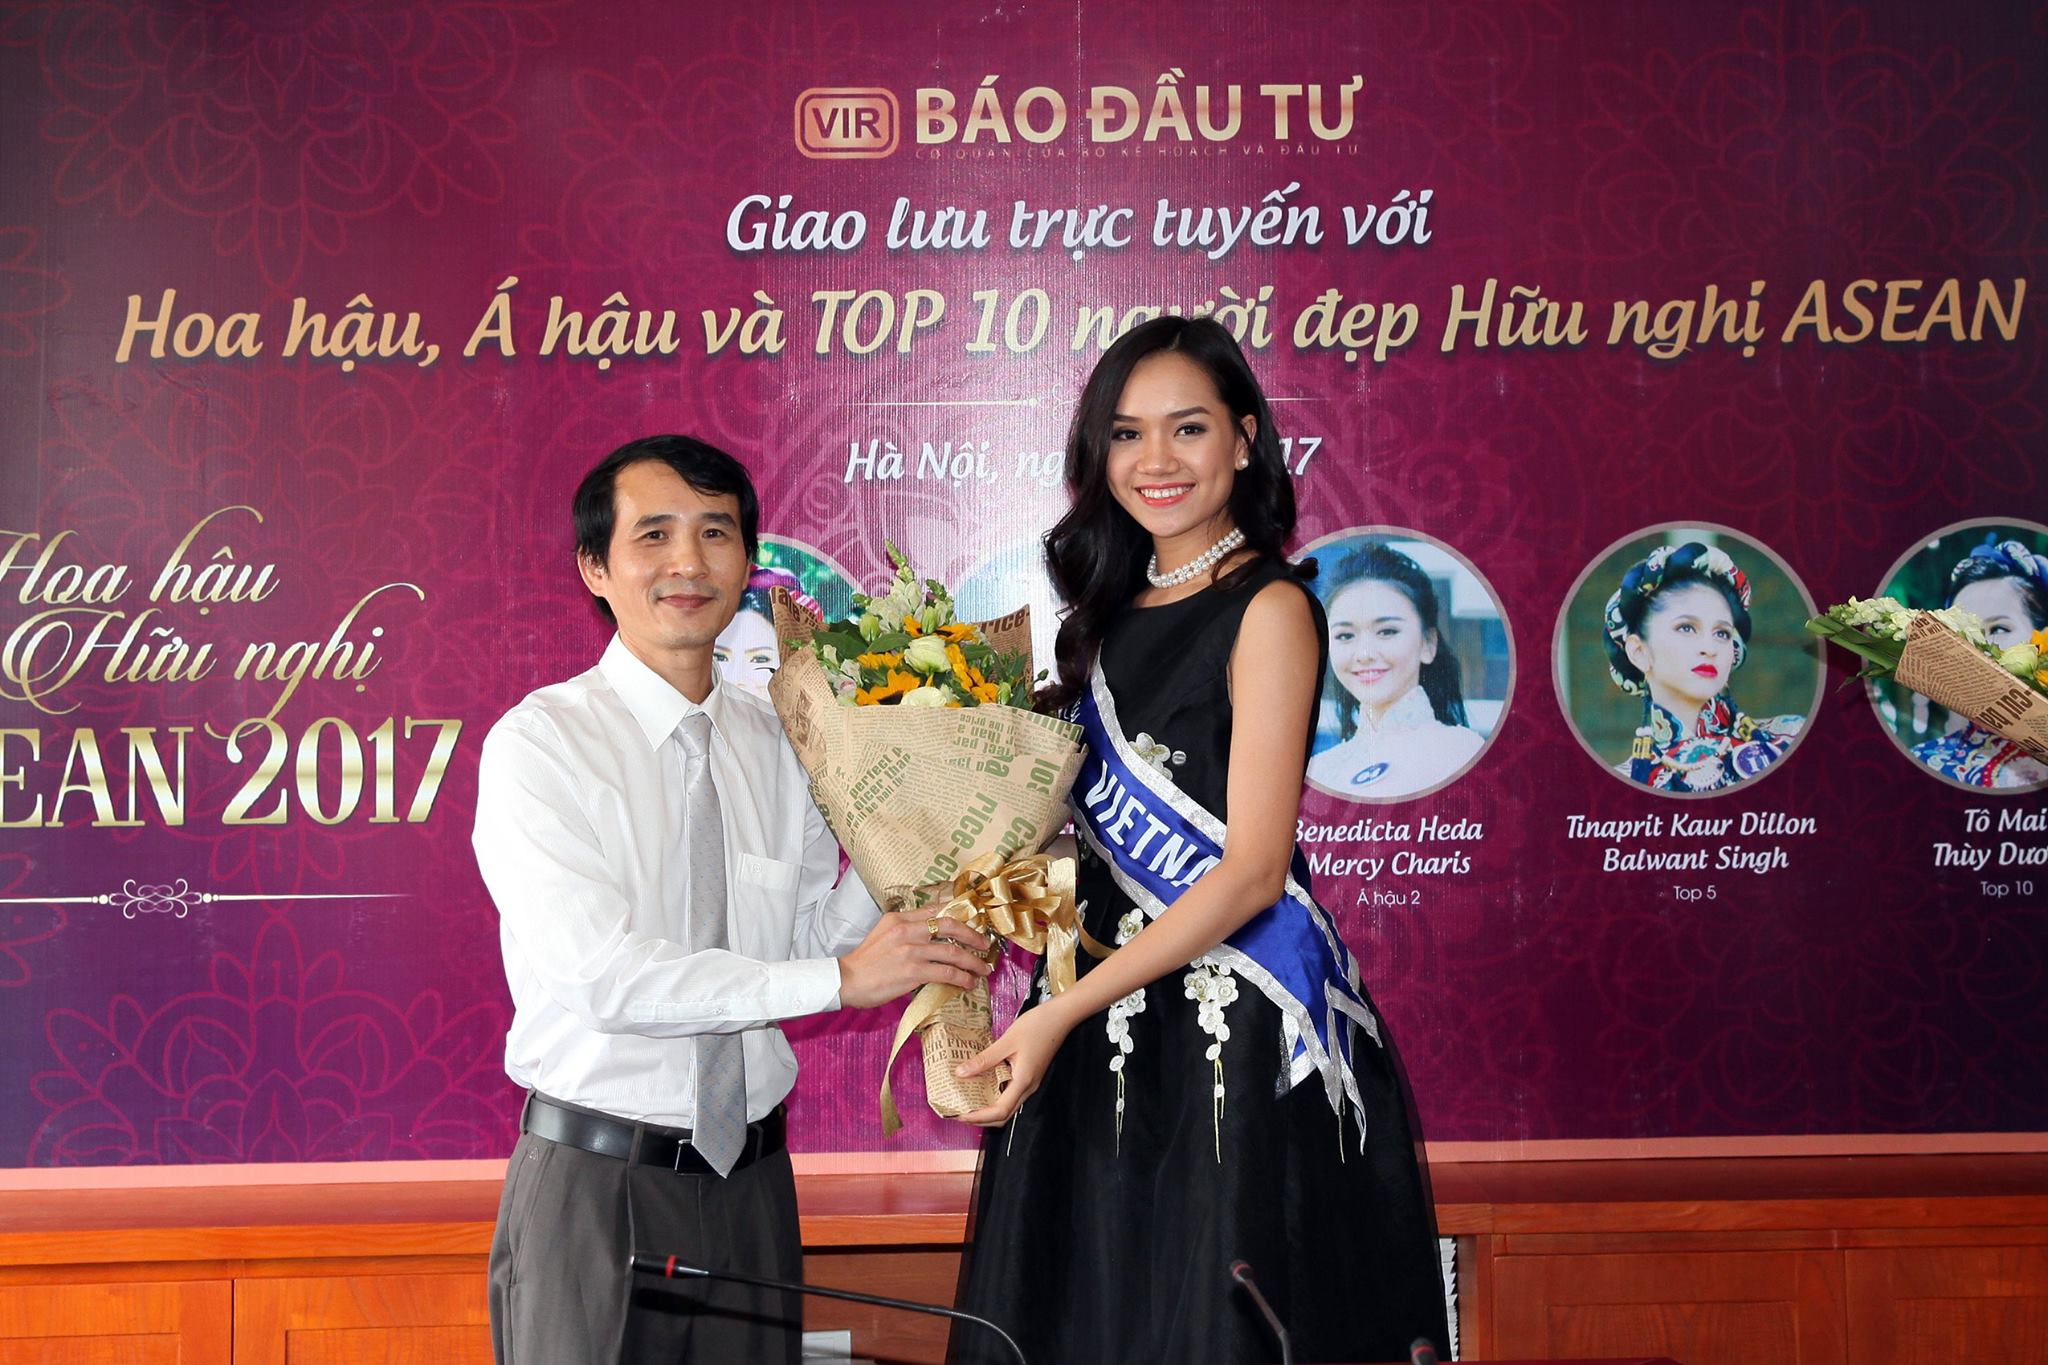 Ông Bùi Đức Hải tặng hoa cho người đẹp Tô Mai Thuỳ Dương - Top 10 Miss ASEAN Frendship 2017